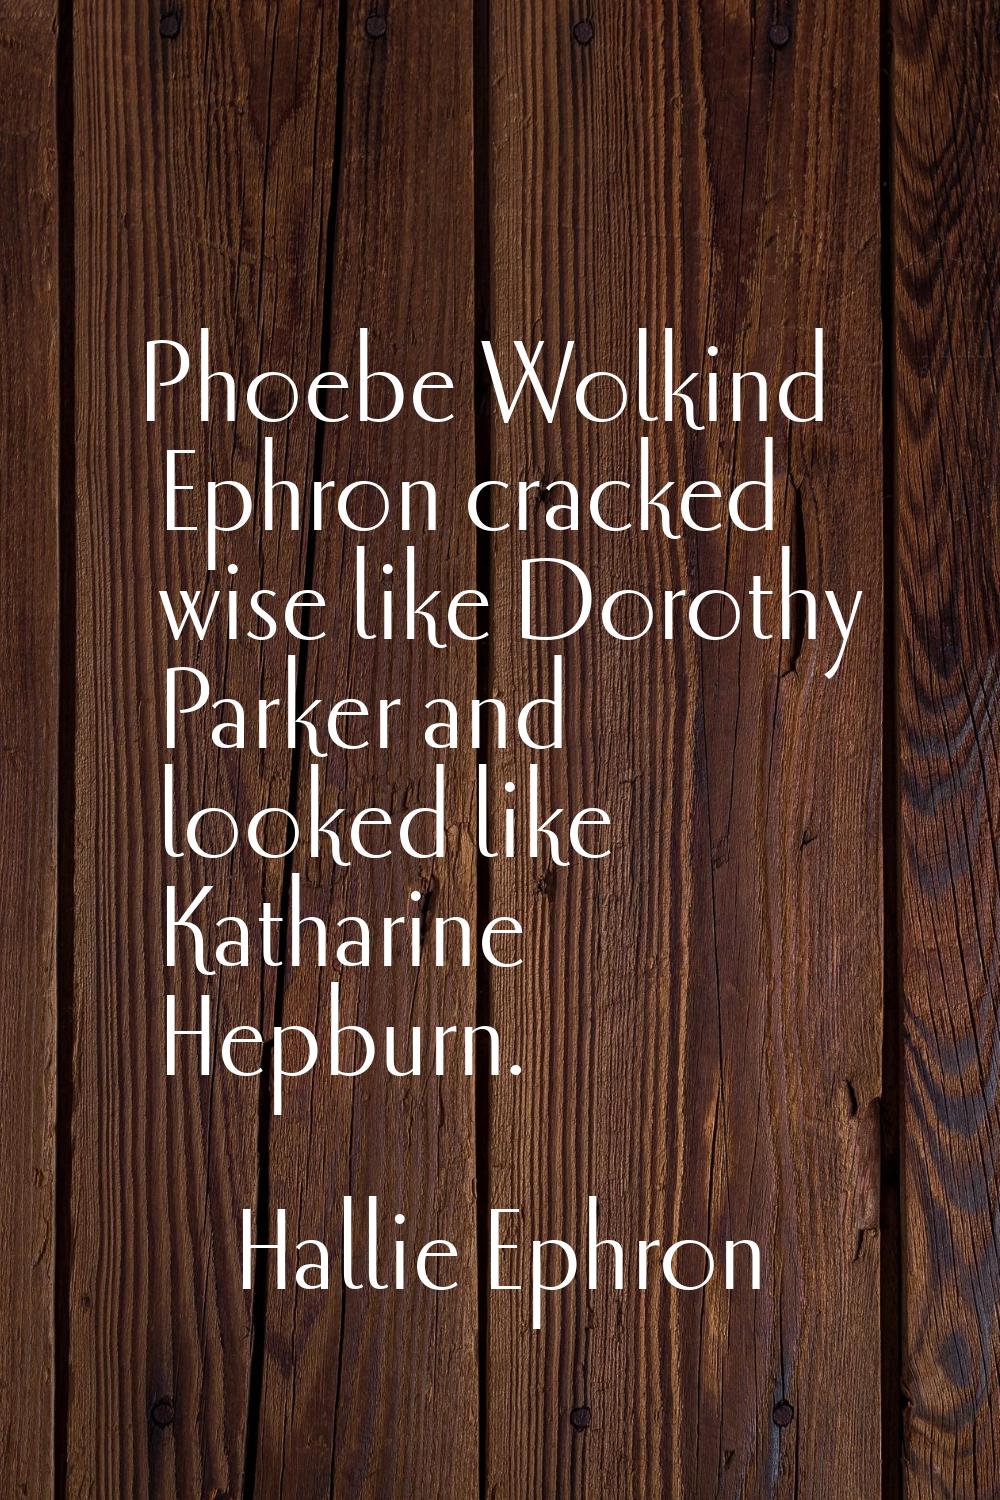 Phoebe Wolkind Ephron cracked wise like Dorothy Parker and looked like Katharine Hepburn.